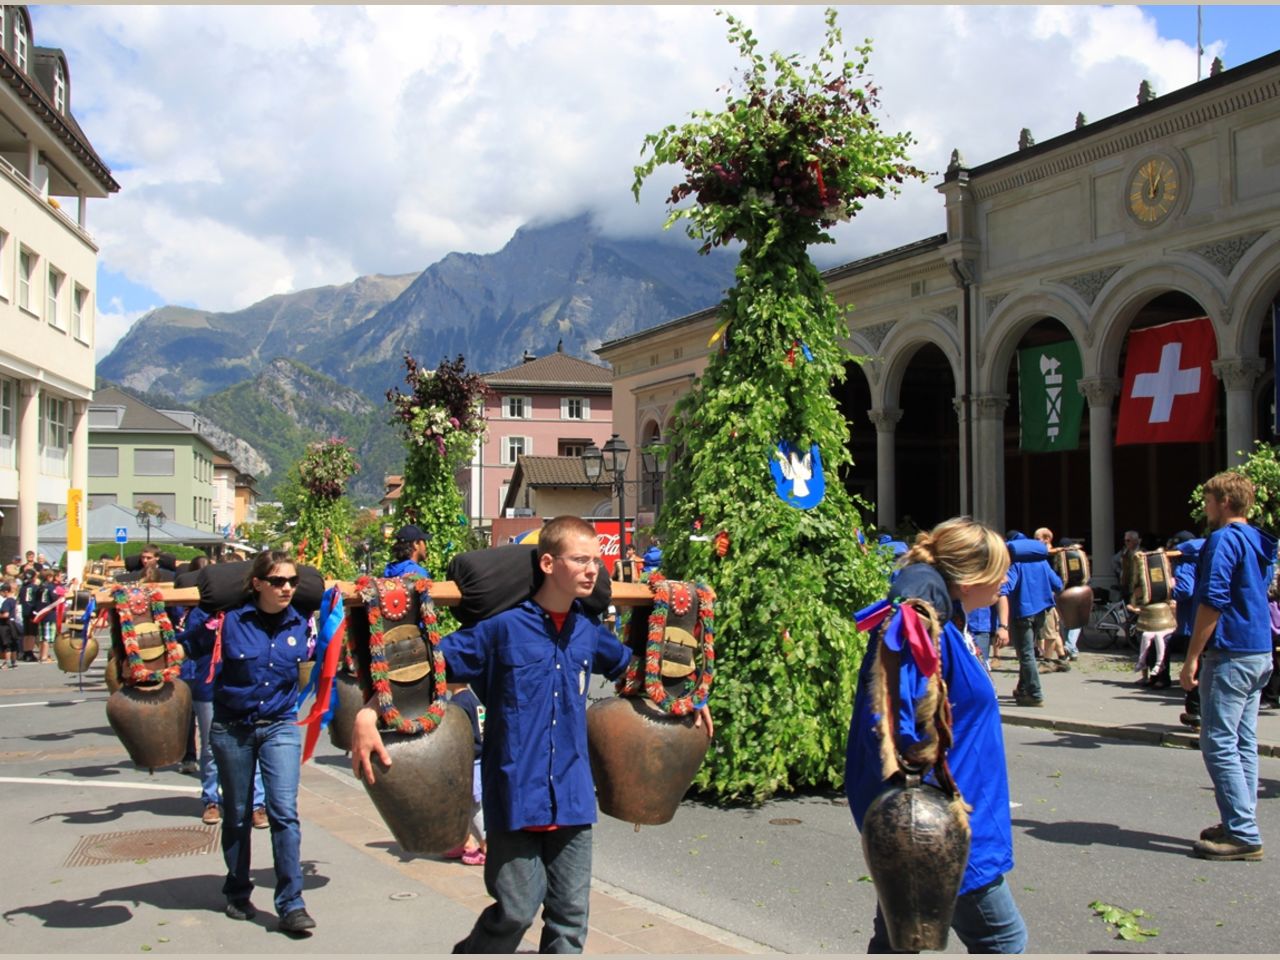 In Europa il Lugano veste i panni del guastafeste